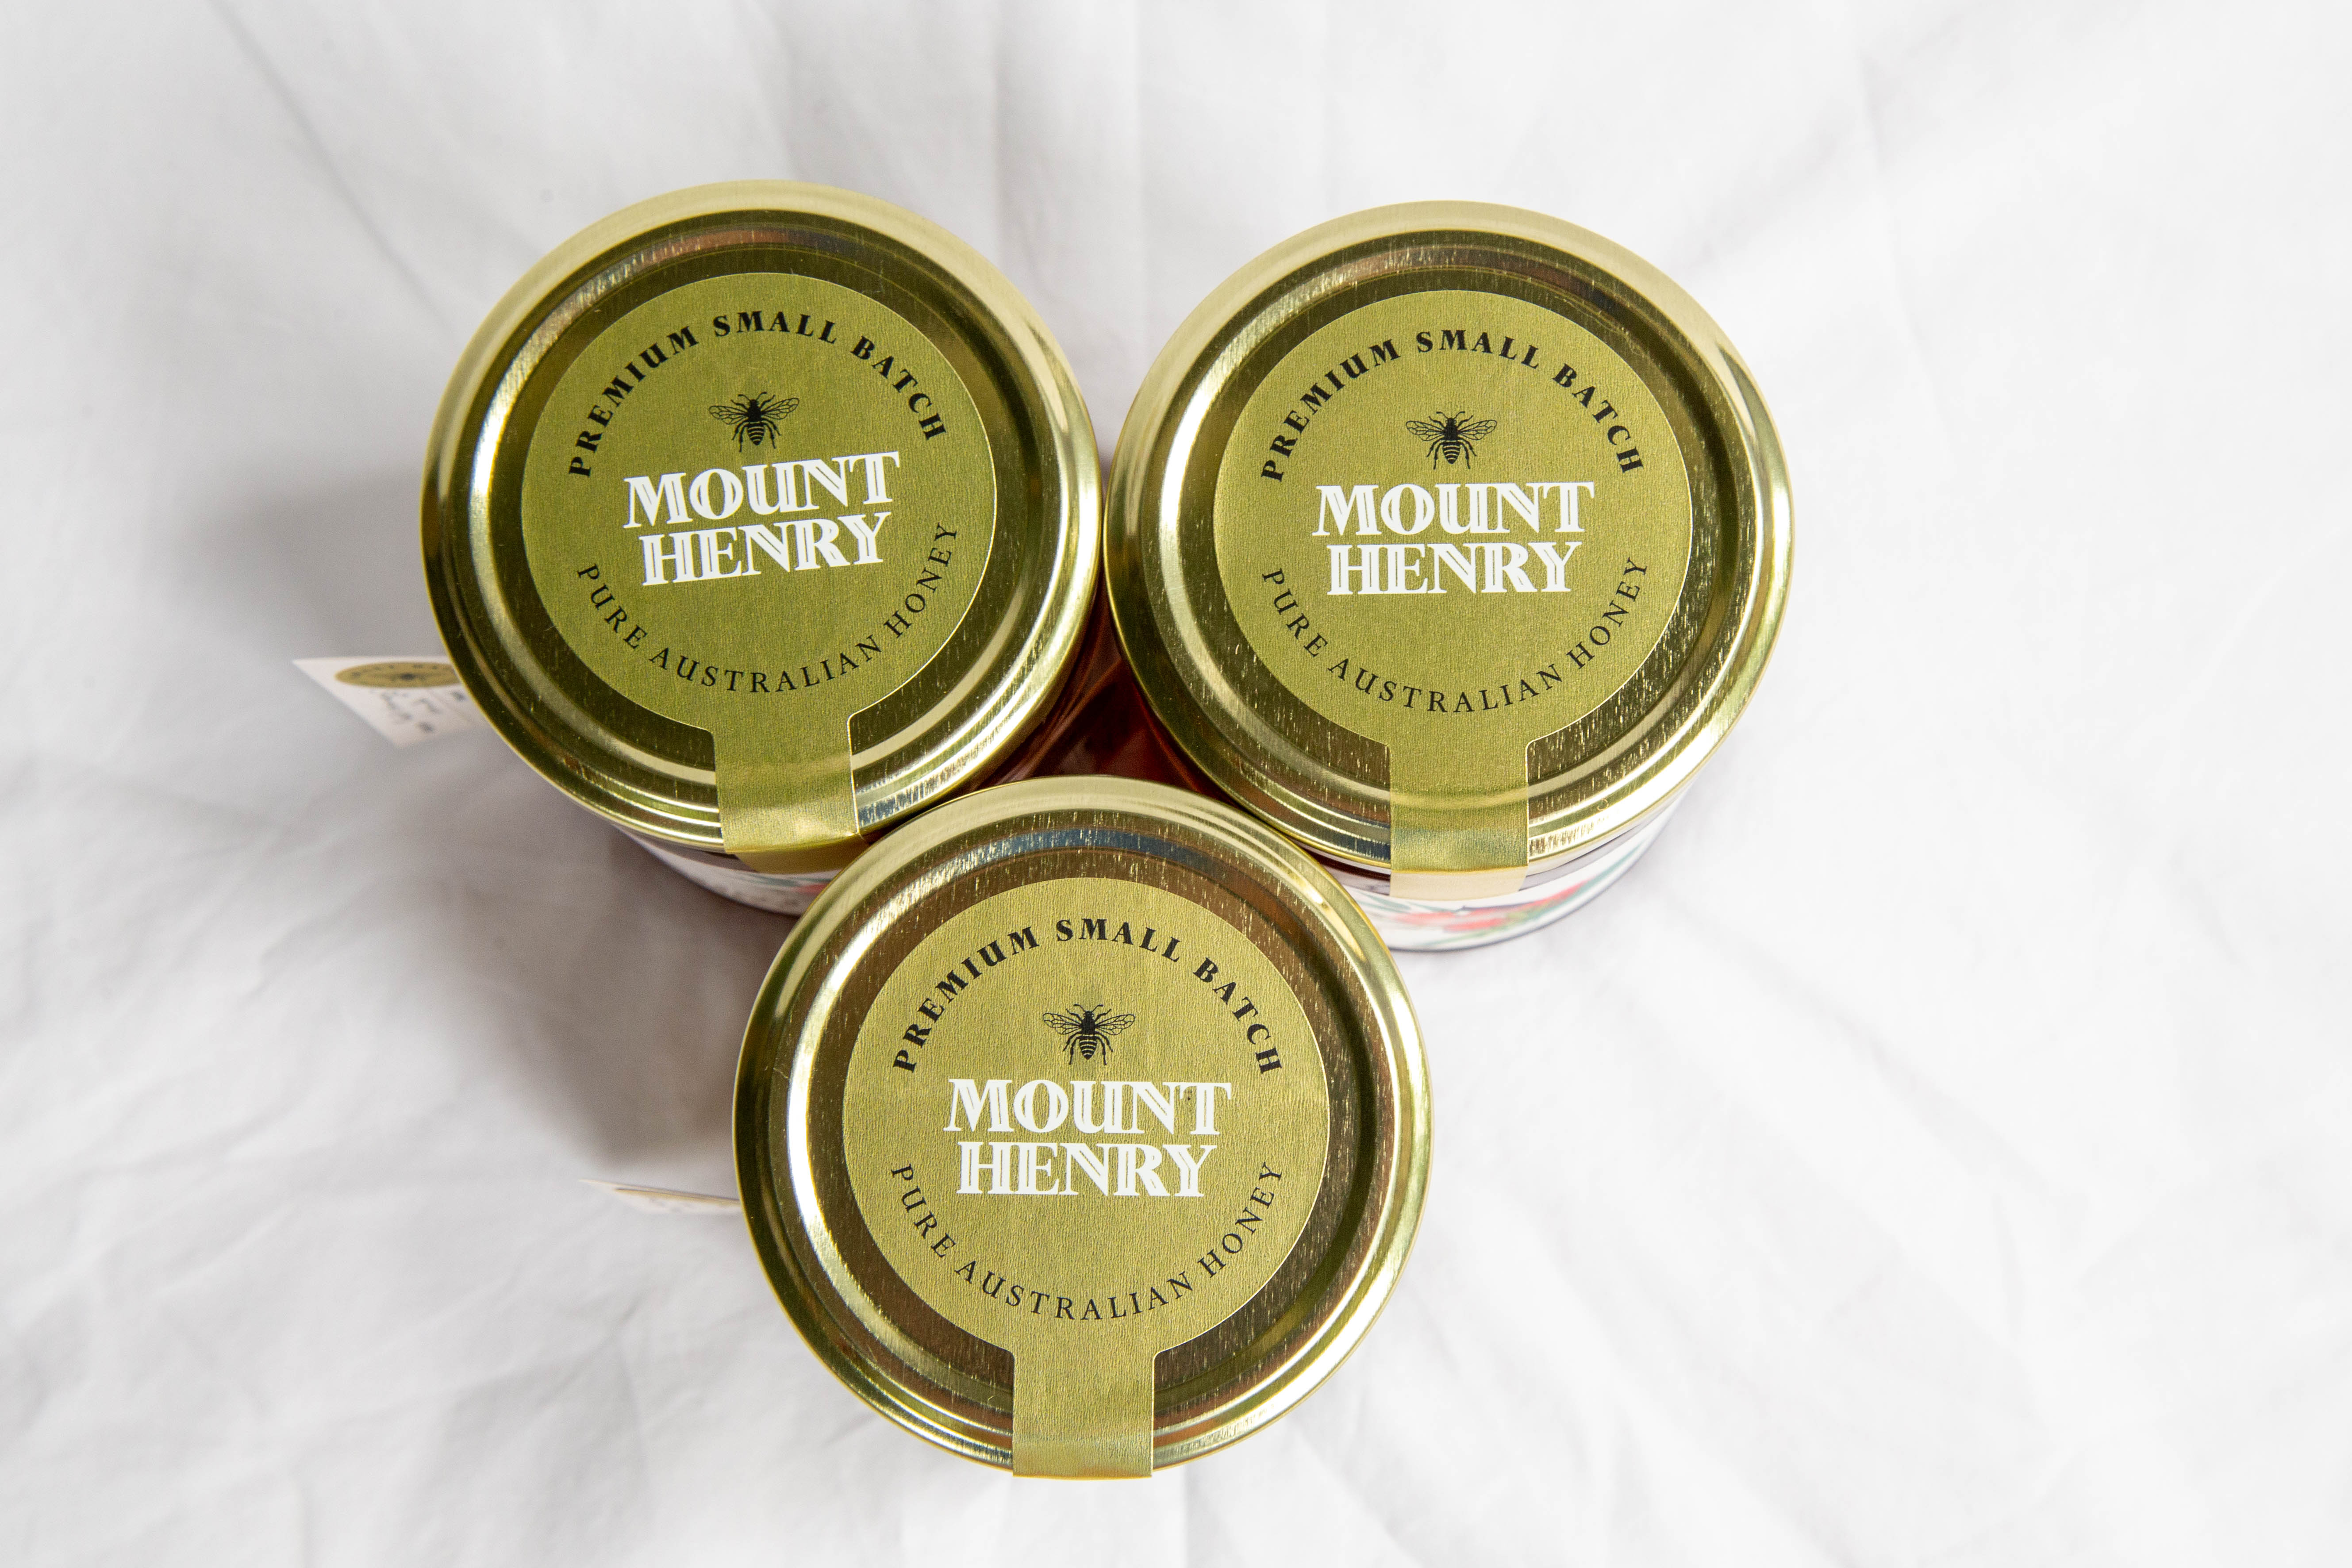 Red Stringybark - Mount Henry Honey